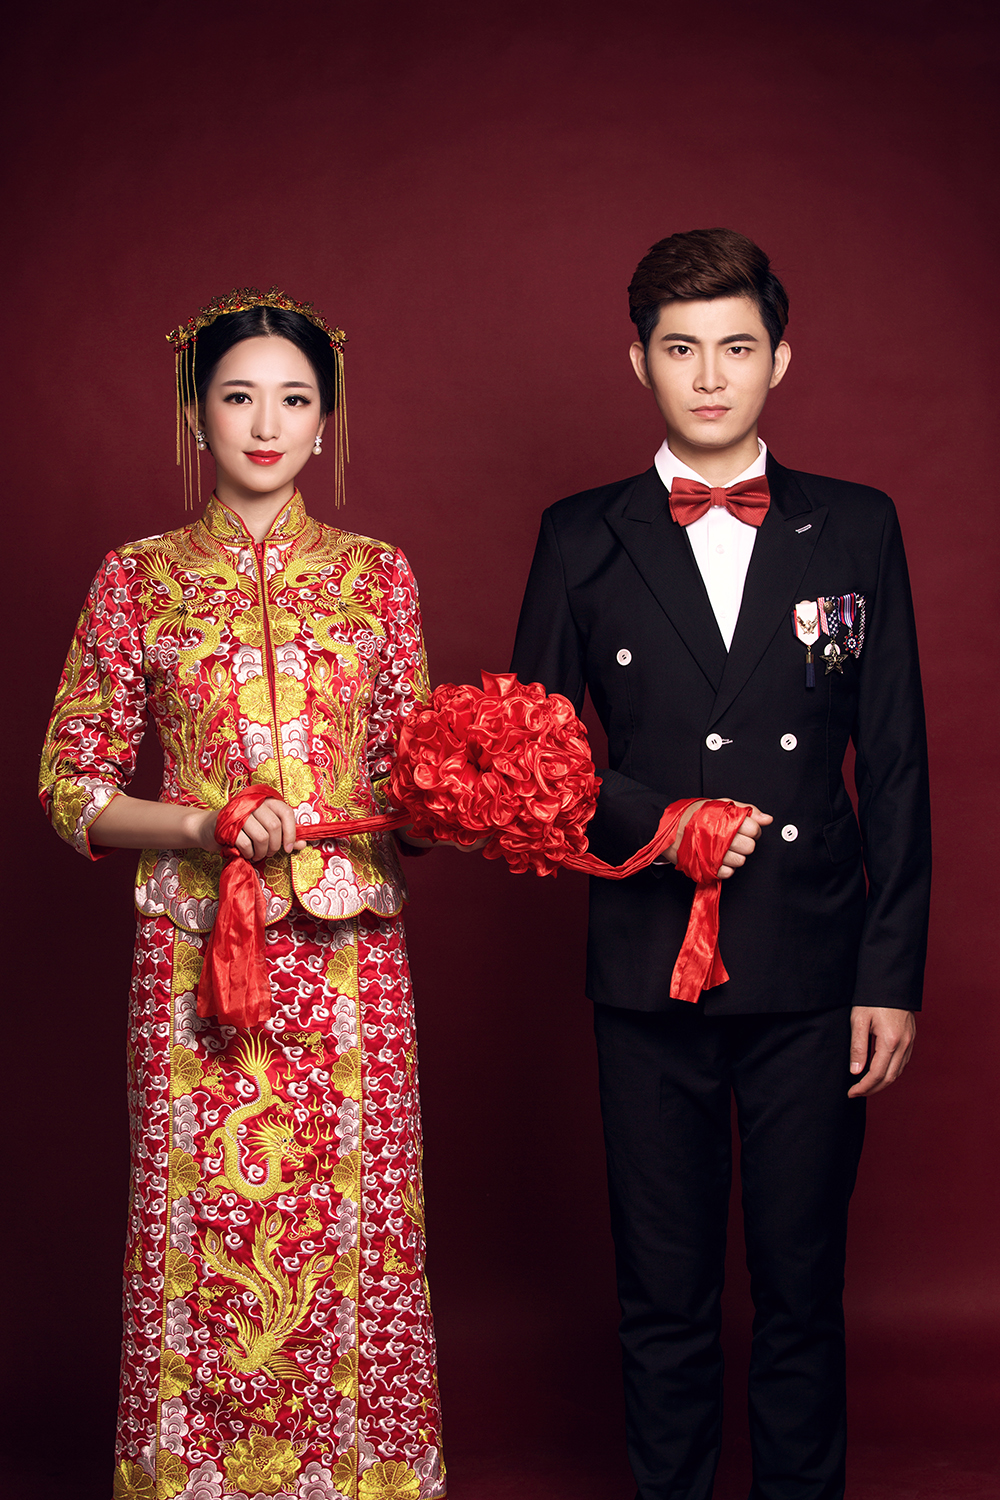 深圳婚纱摄影分享不同风格的婚纱照